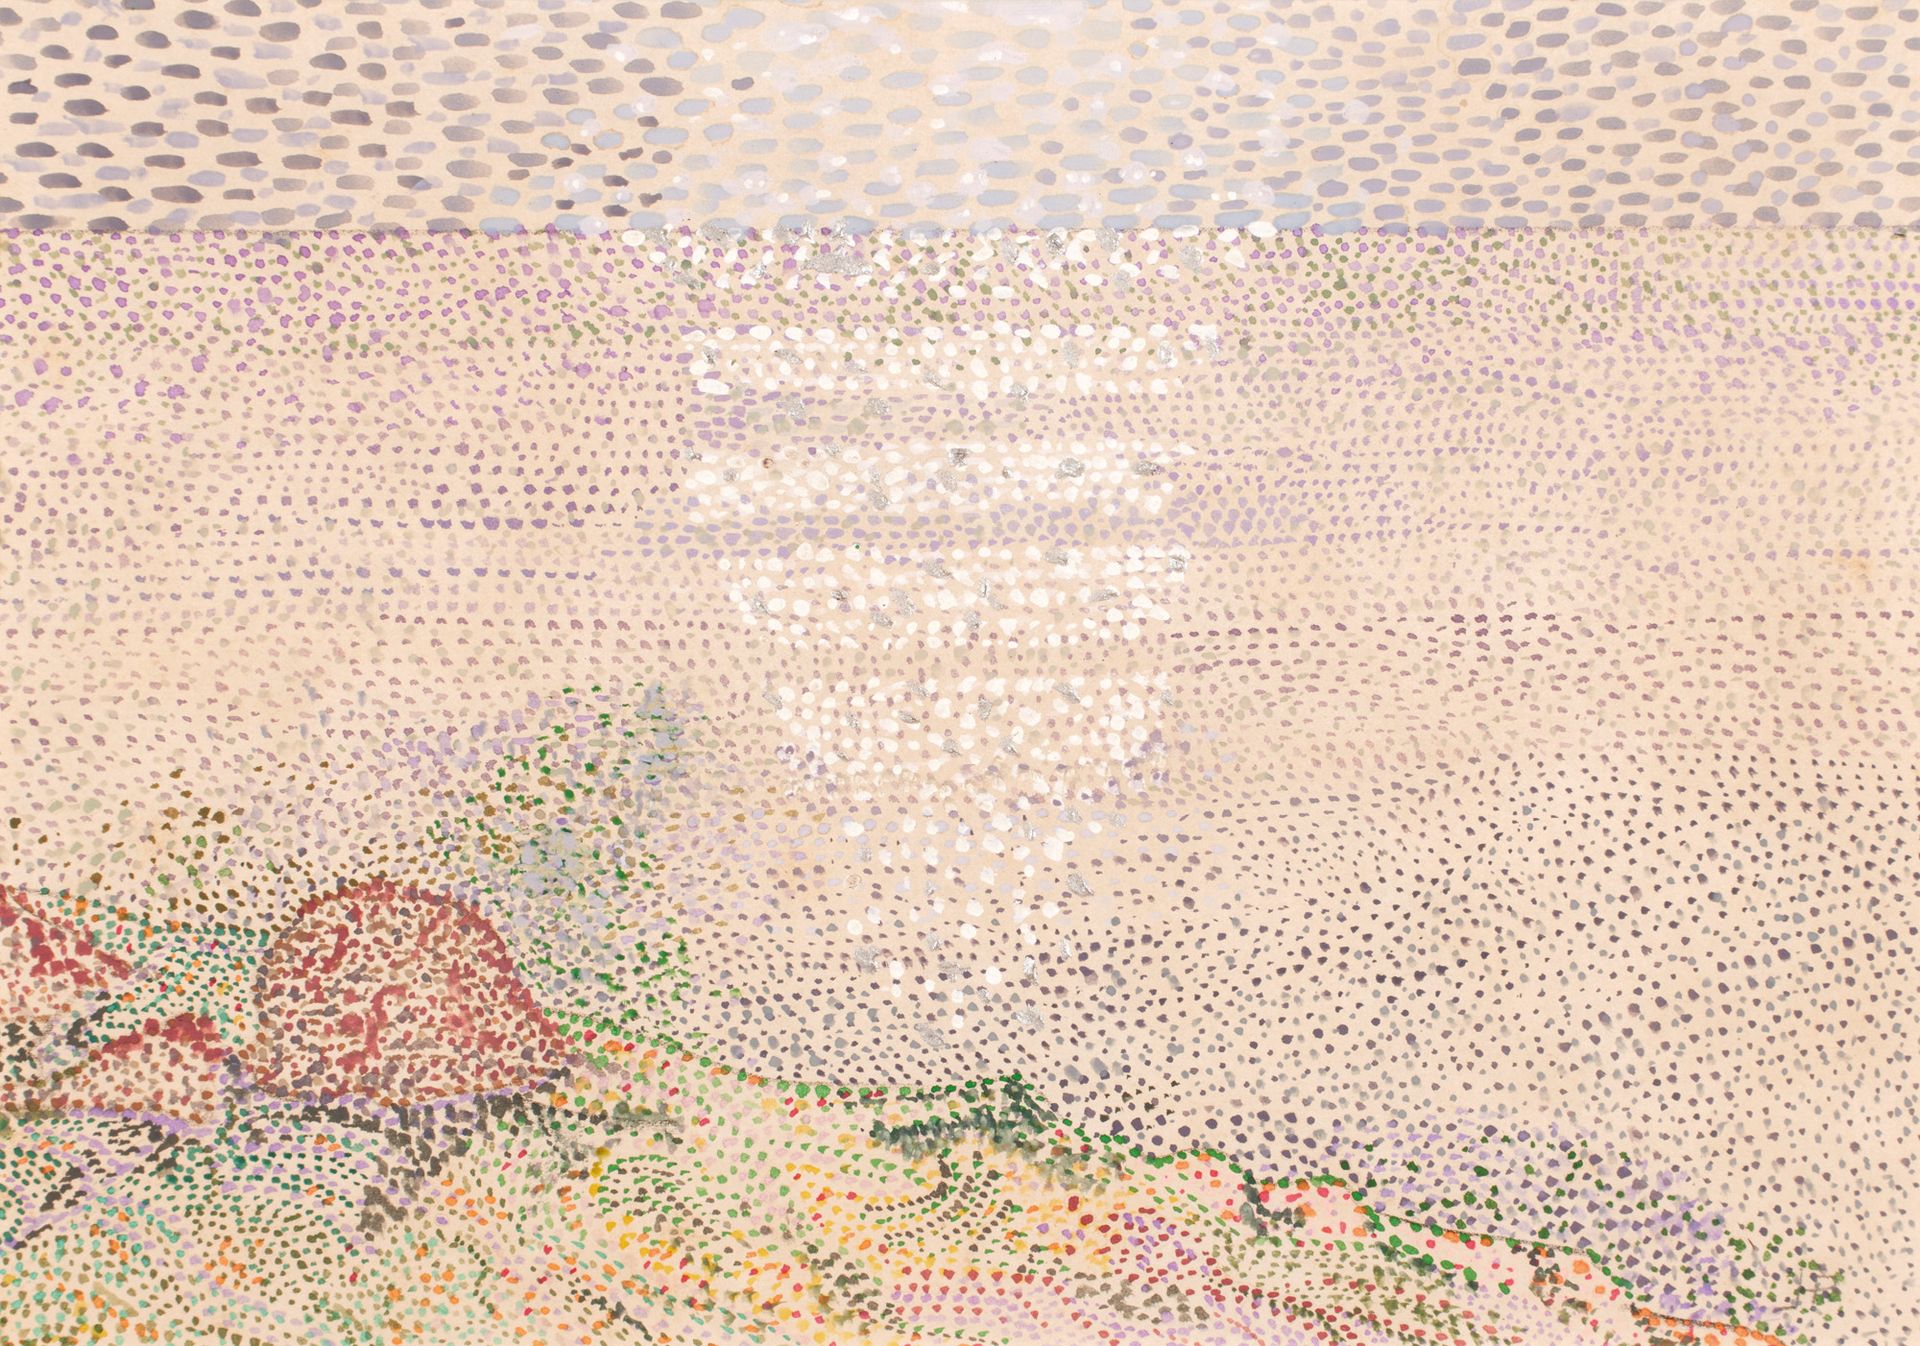 École pointilliste XXème siècle 点彩画派 20世纪

月光。

水彩画

20 x 29 厘米